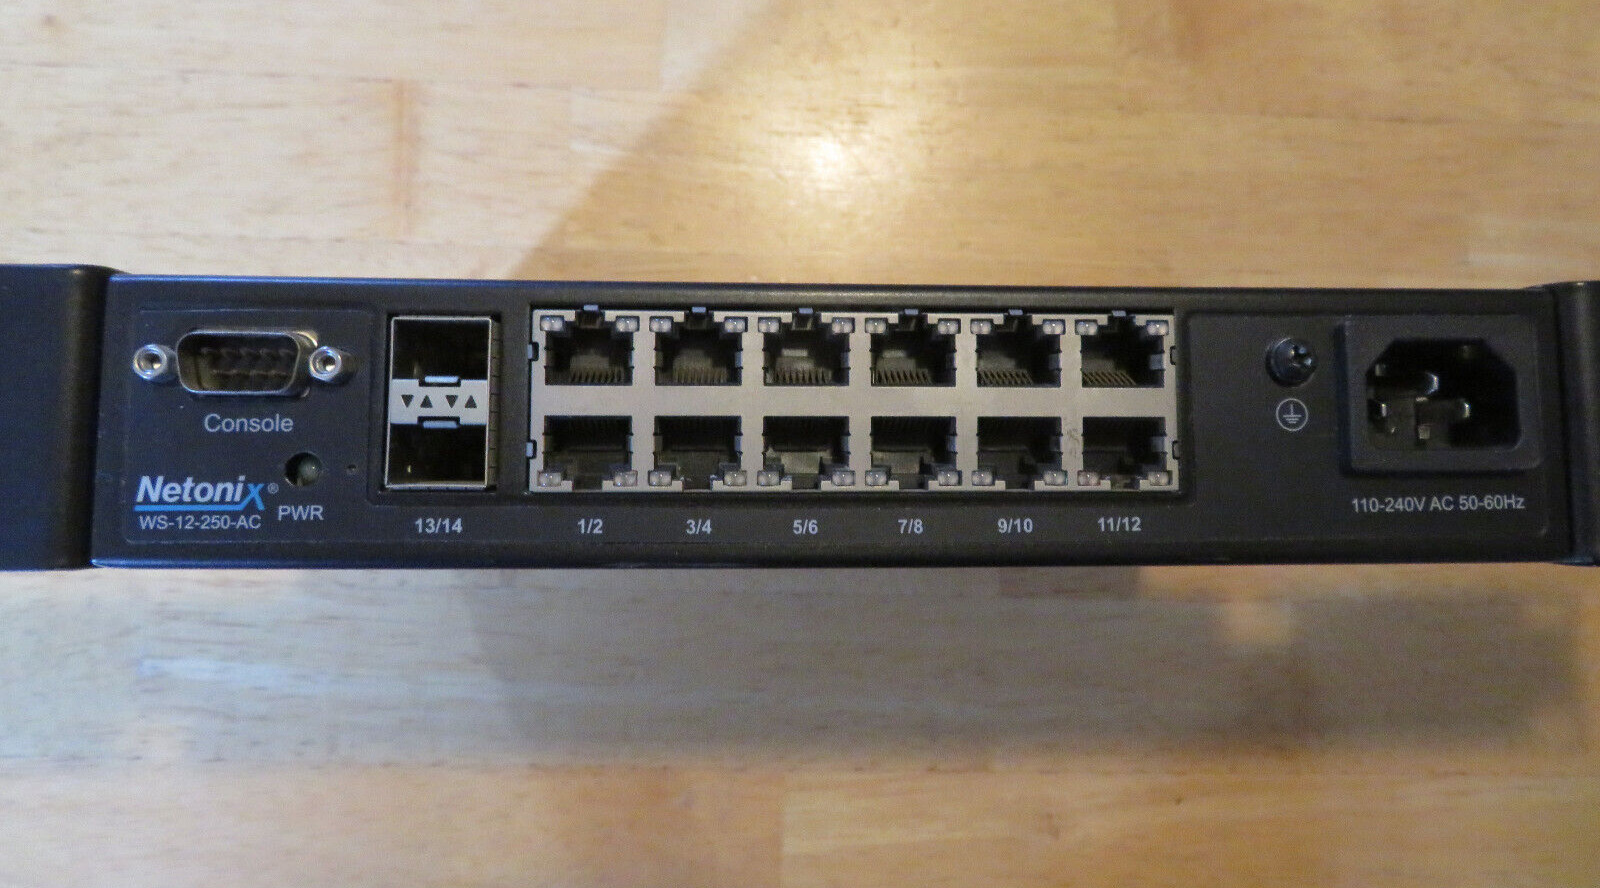 Netonix 12 Port 250 Watt WISP Switch (WS-12-250-AC)